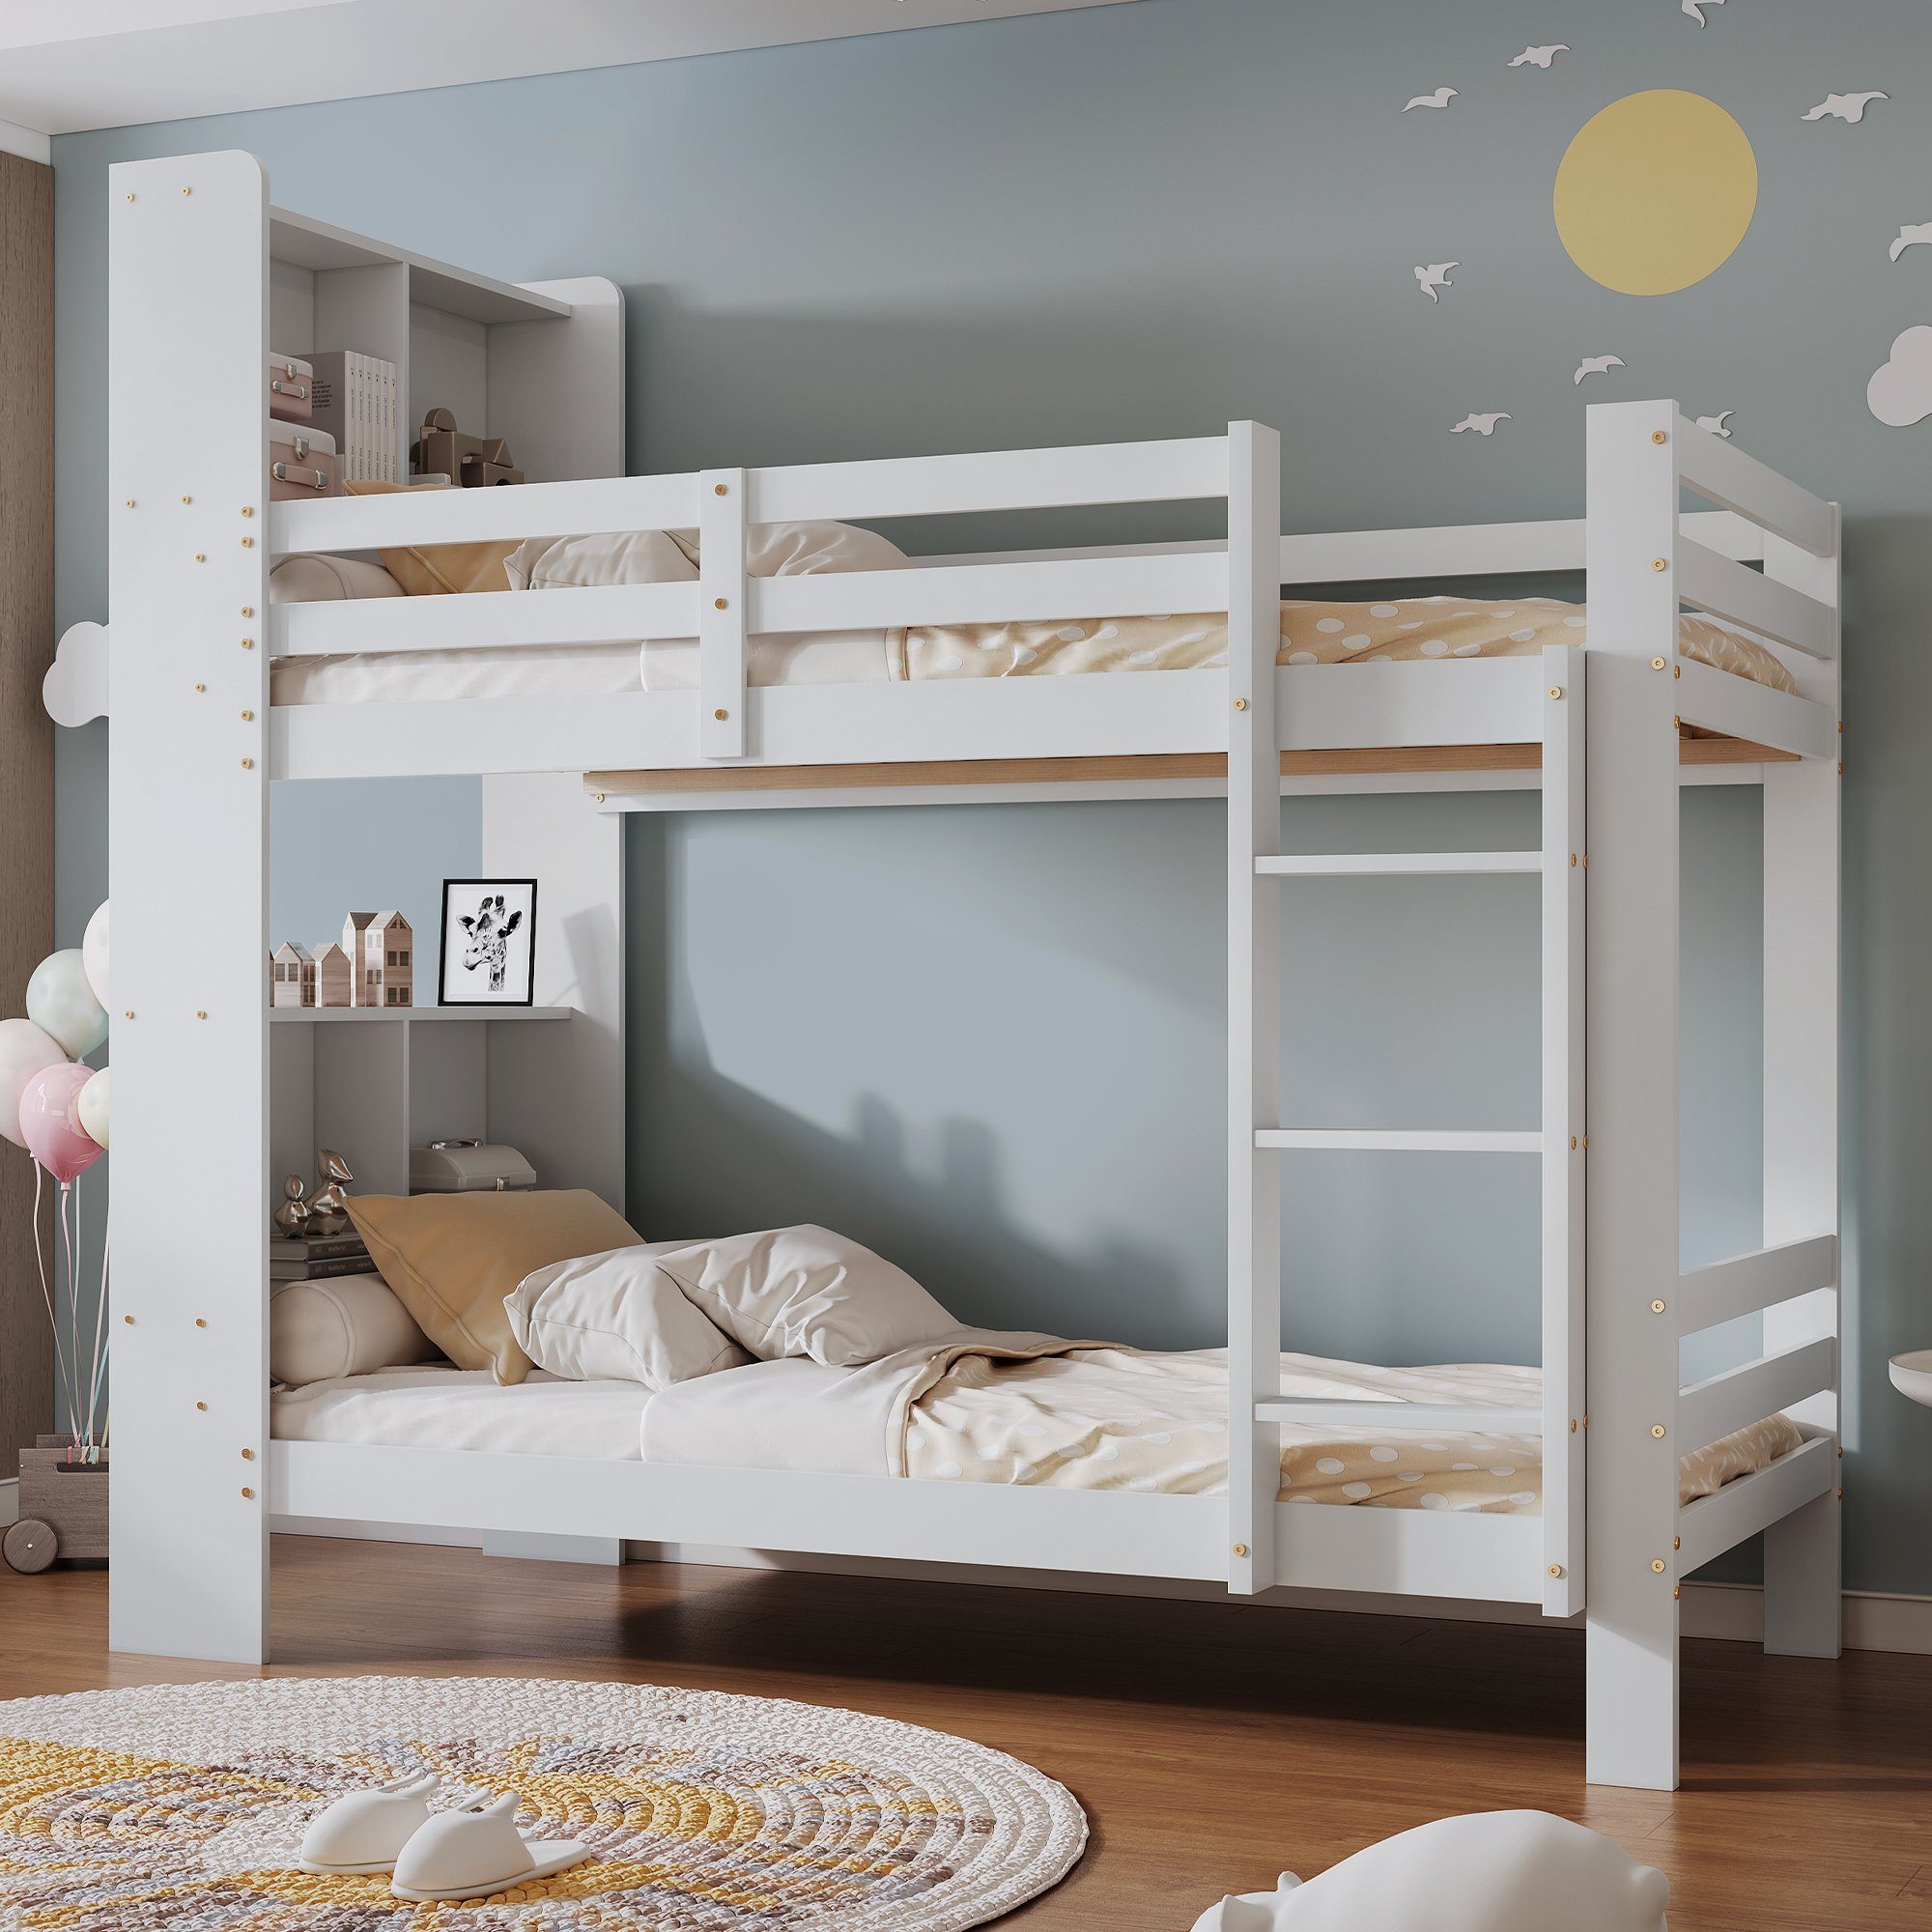 SOFTWEARY Etagenbett Kinderbett mit 2 Schlafgelegenheiten, Lattenrost,  Leiter und Regal (90x200 cm), Holzbett aus Kiefer, Hochbett inkl.  Rausfallschutz | Etagenbetten